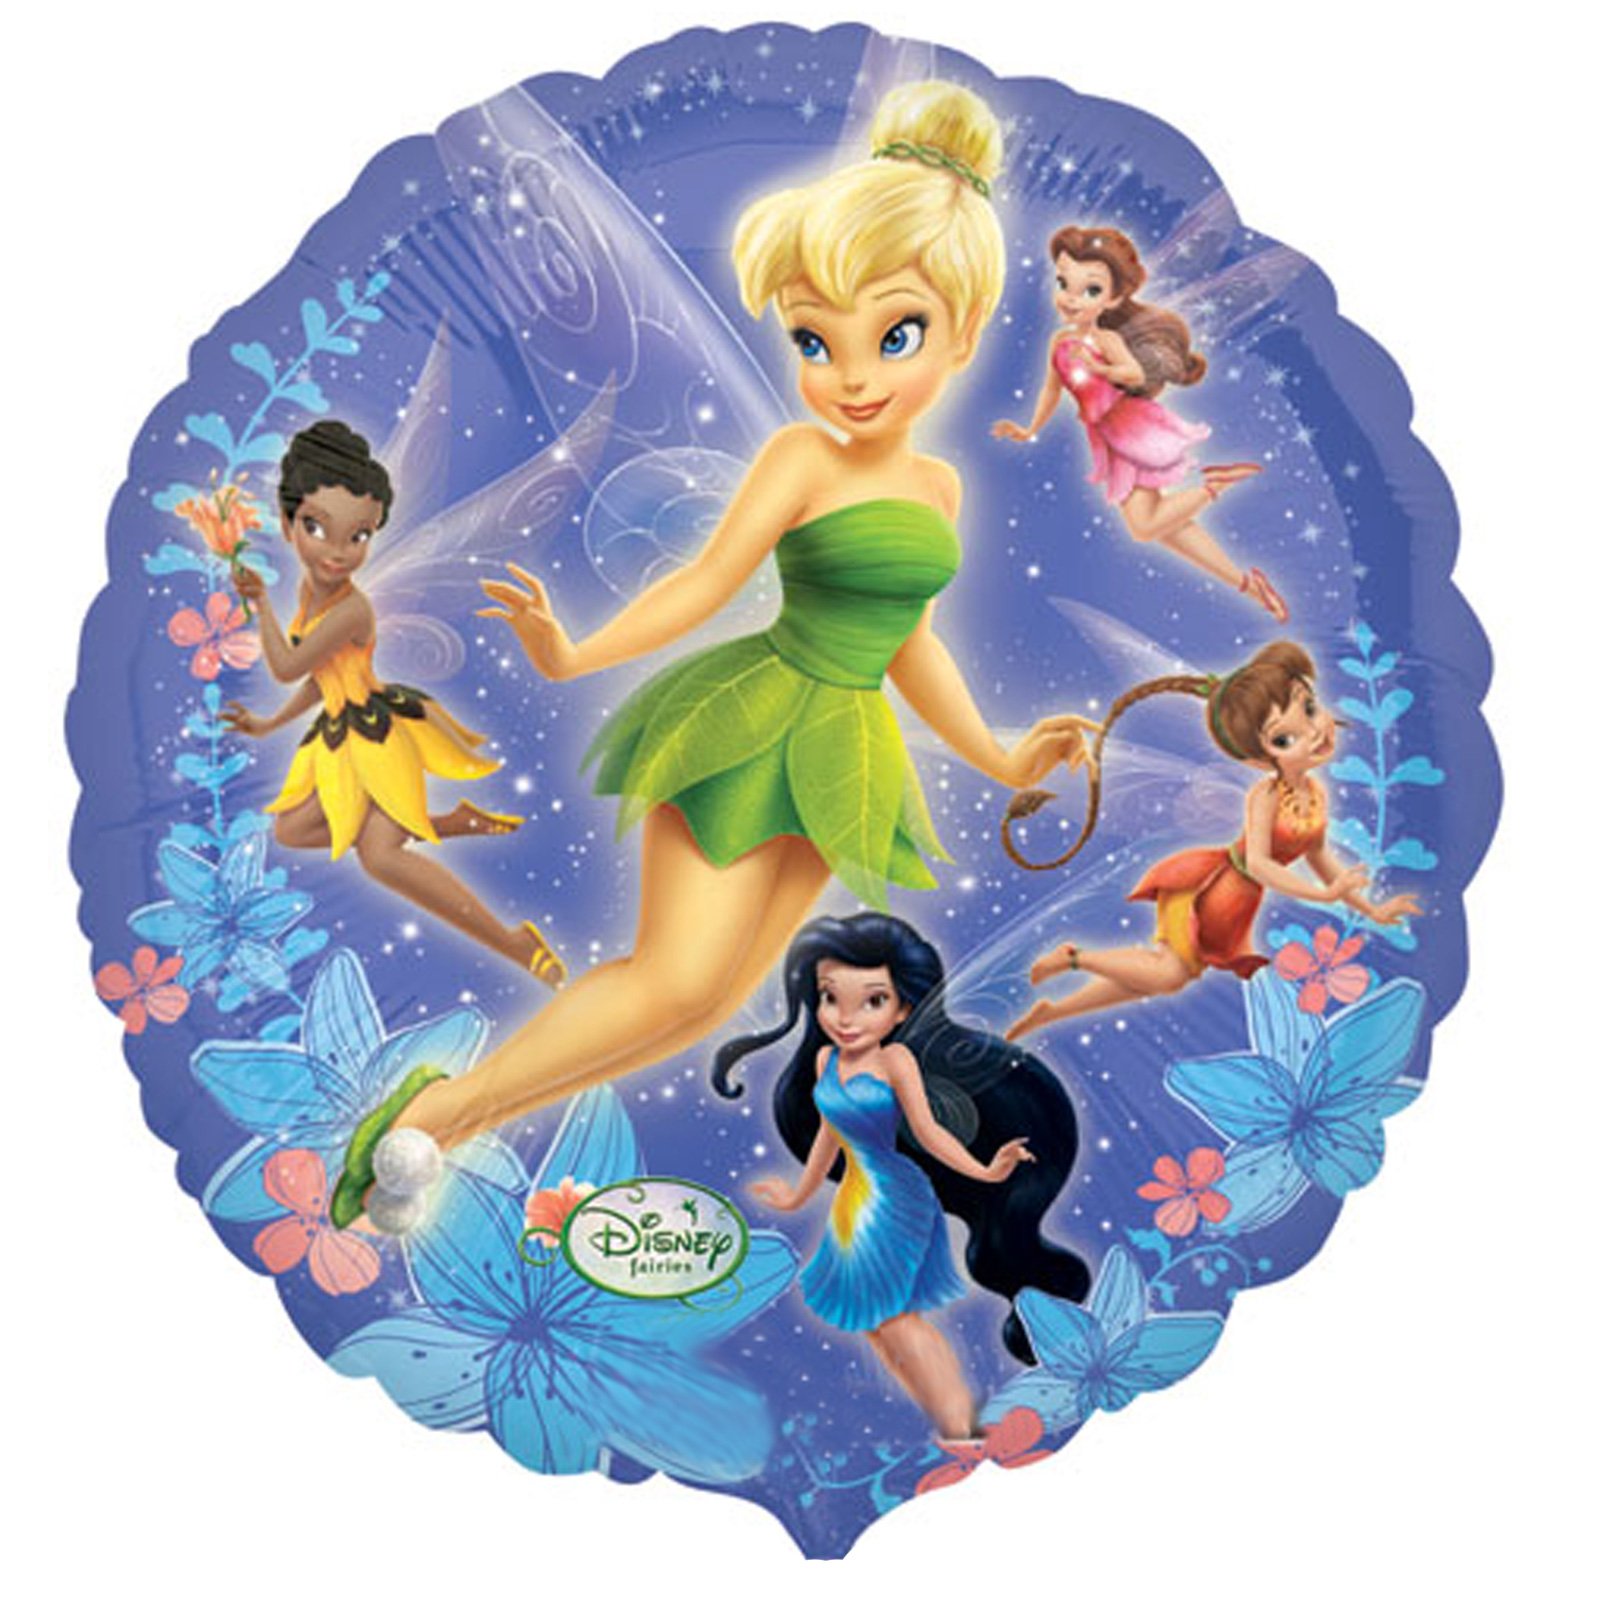 Disney's Fairies 18" Foil Balloon